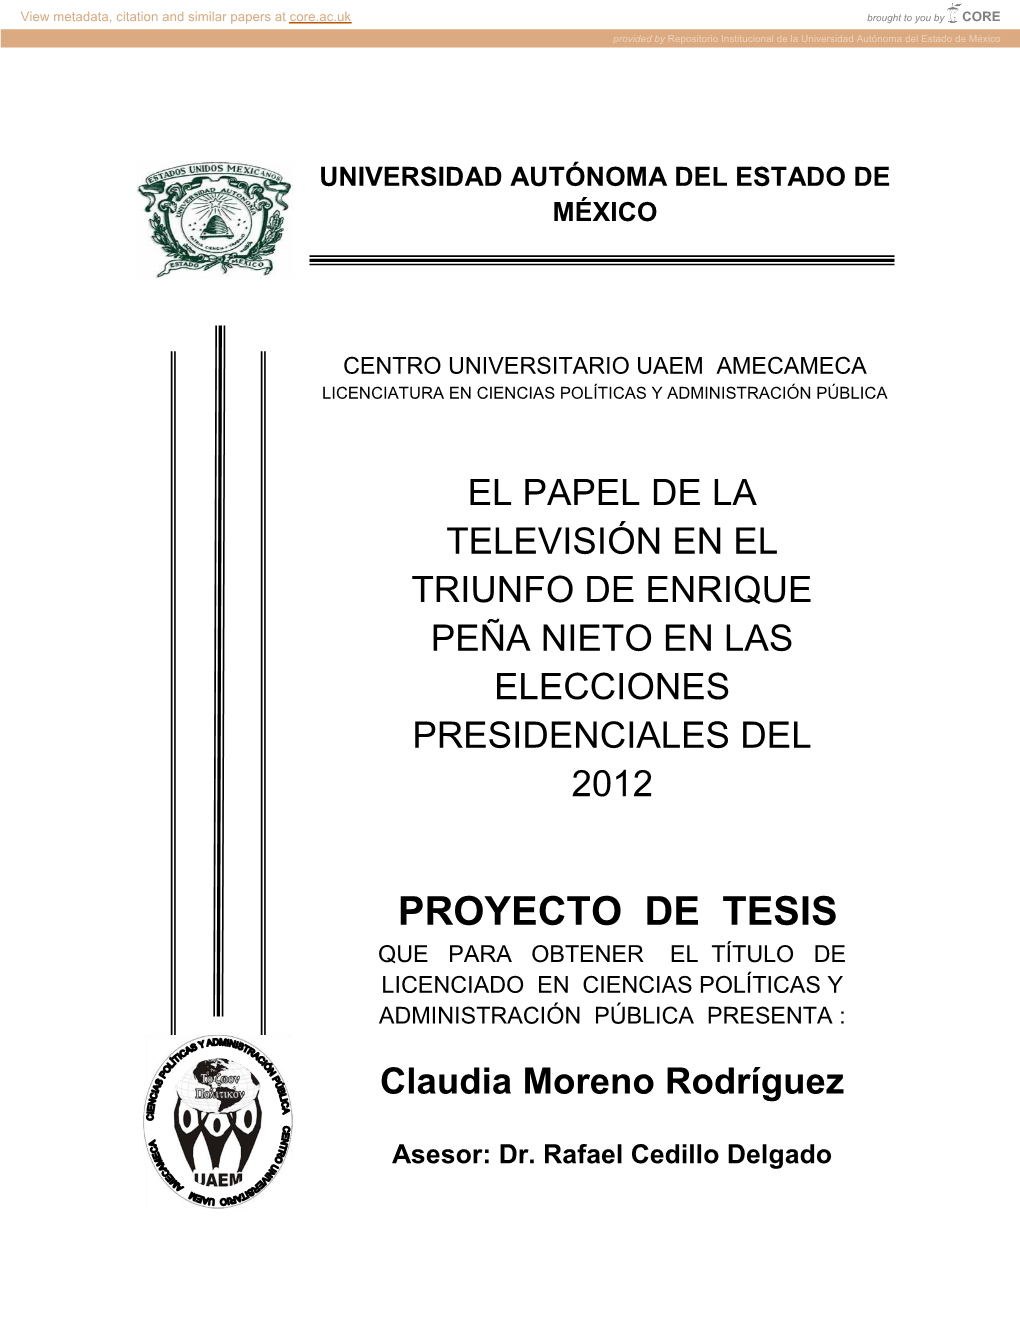 Proyecto De Tesis Que Para Obtener El Título De Licenciado En Ciencias Políticas Y Administración Pública Presenta